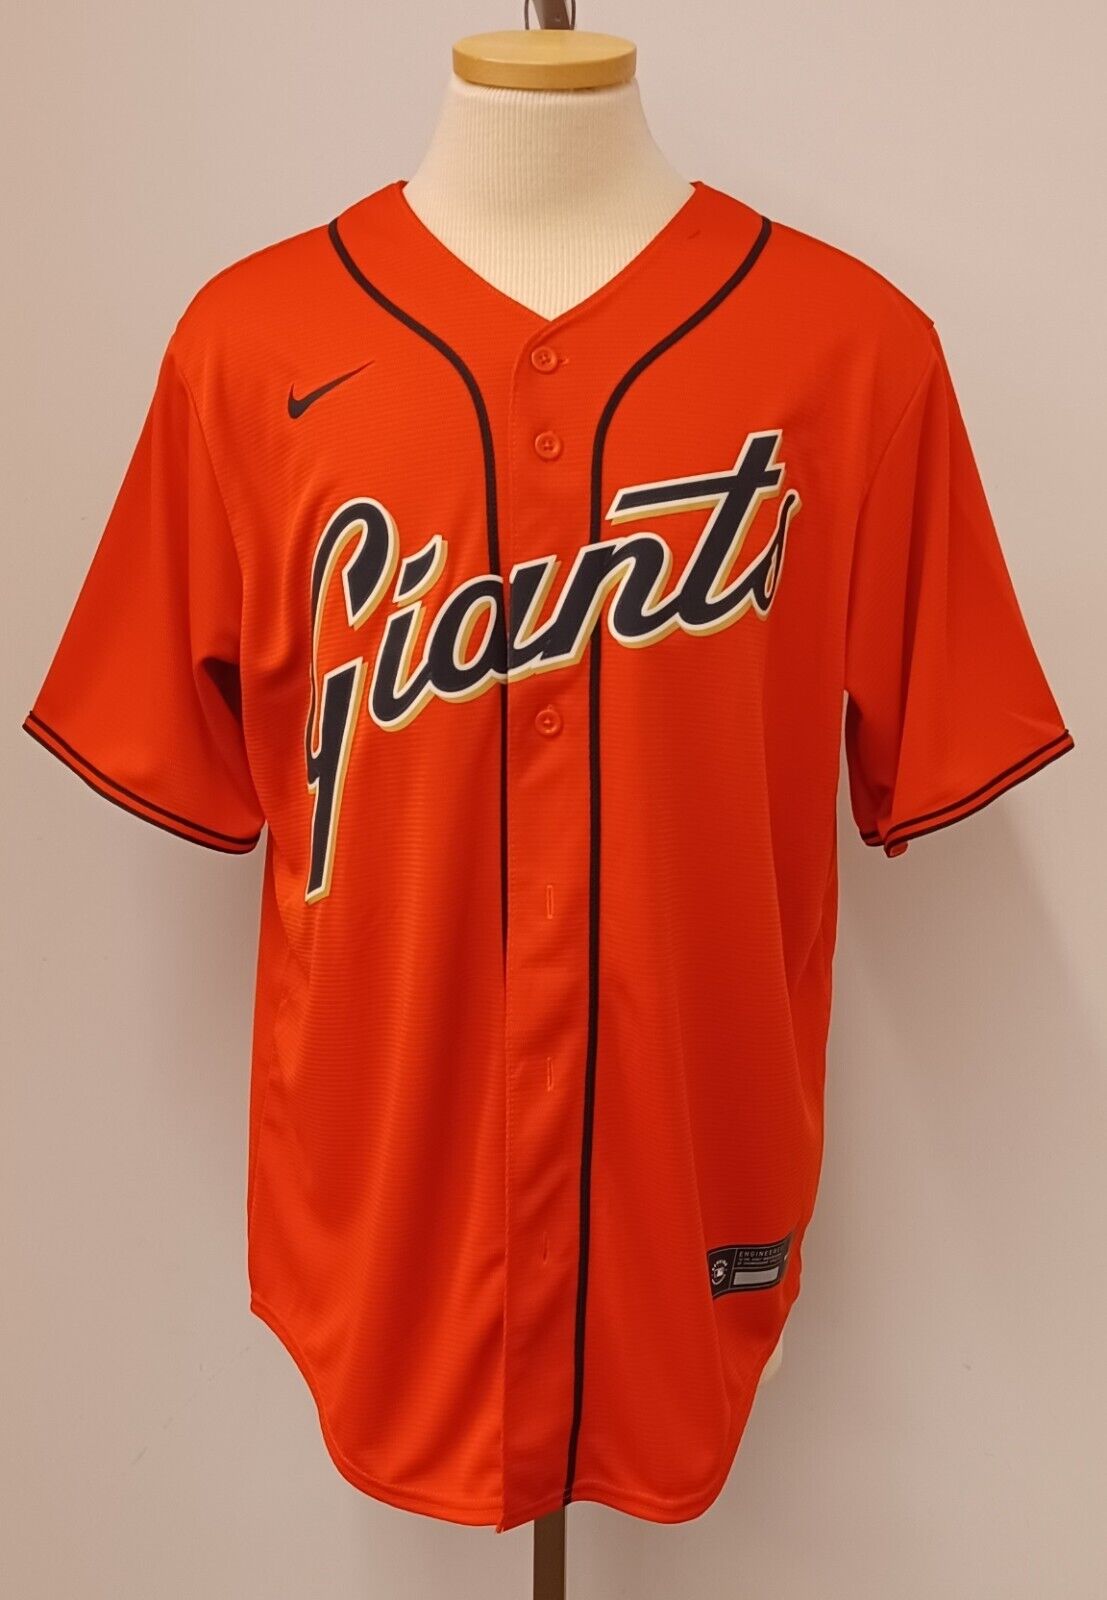 sf giants jersey orange